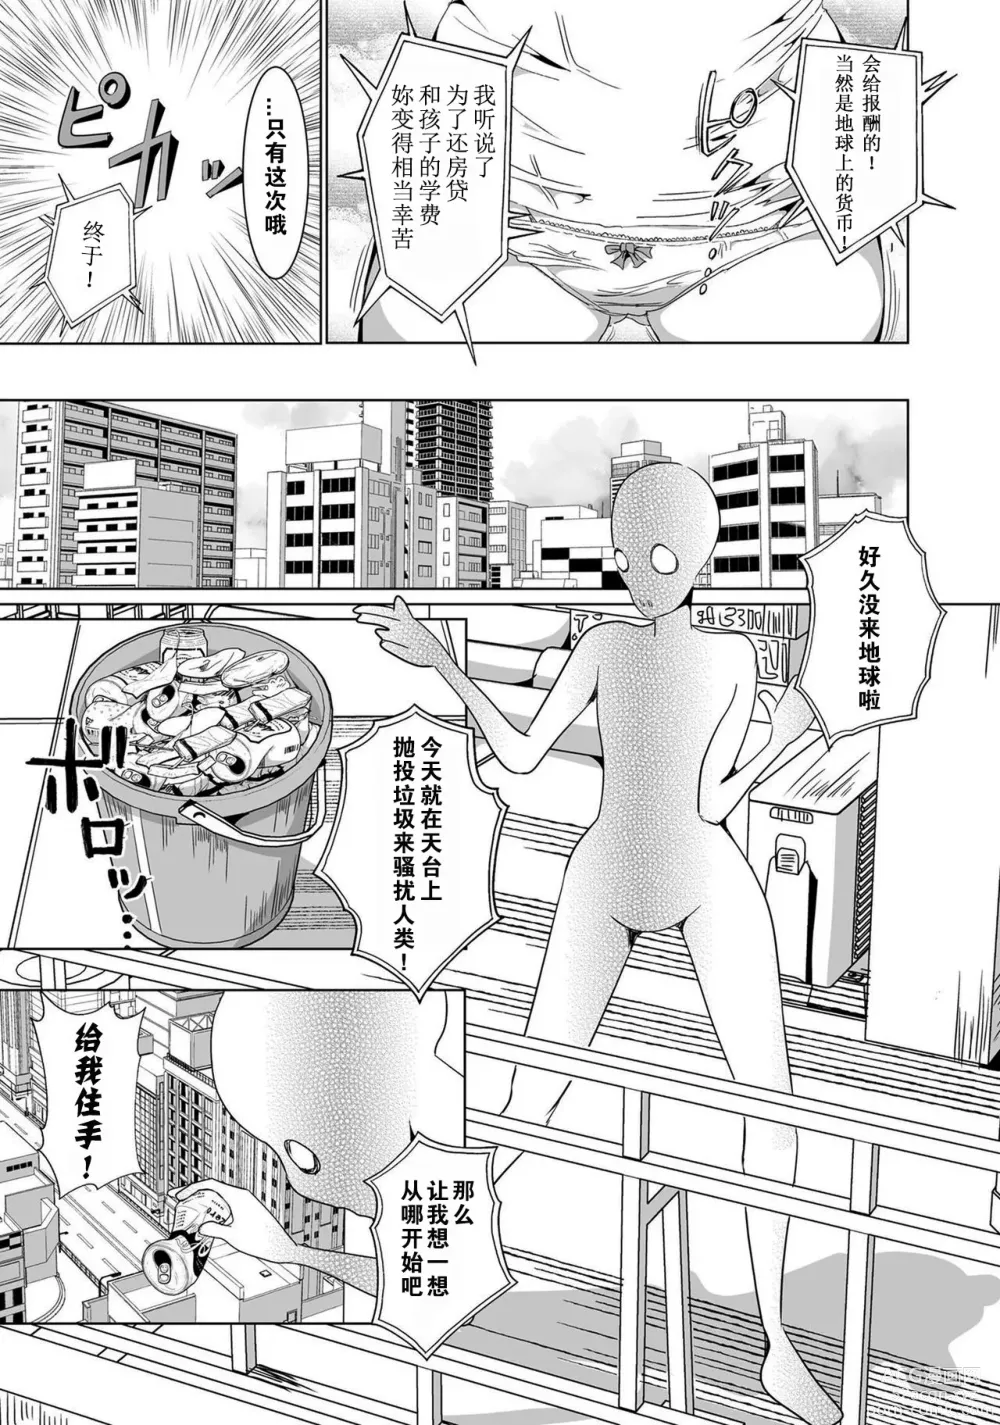 Page 3 of manga Moto